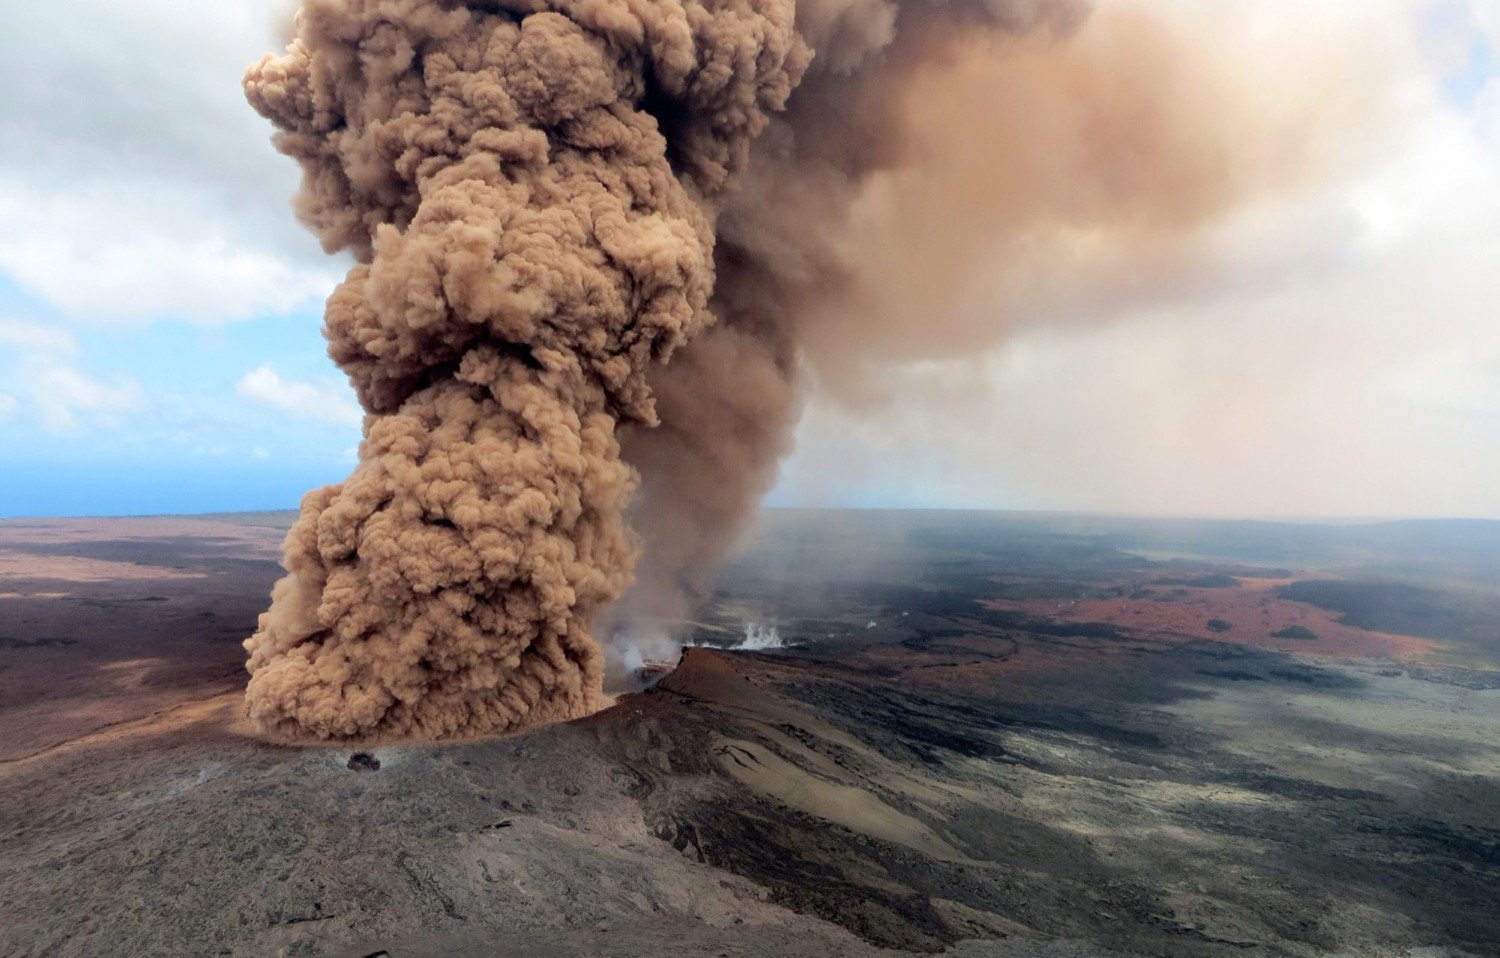 La situation à Hawaii s'aggrave, le Kilauea peut commencer à exploser